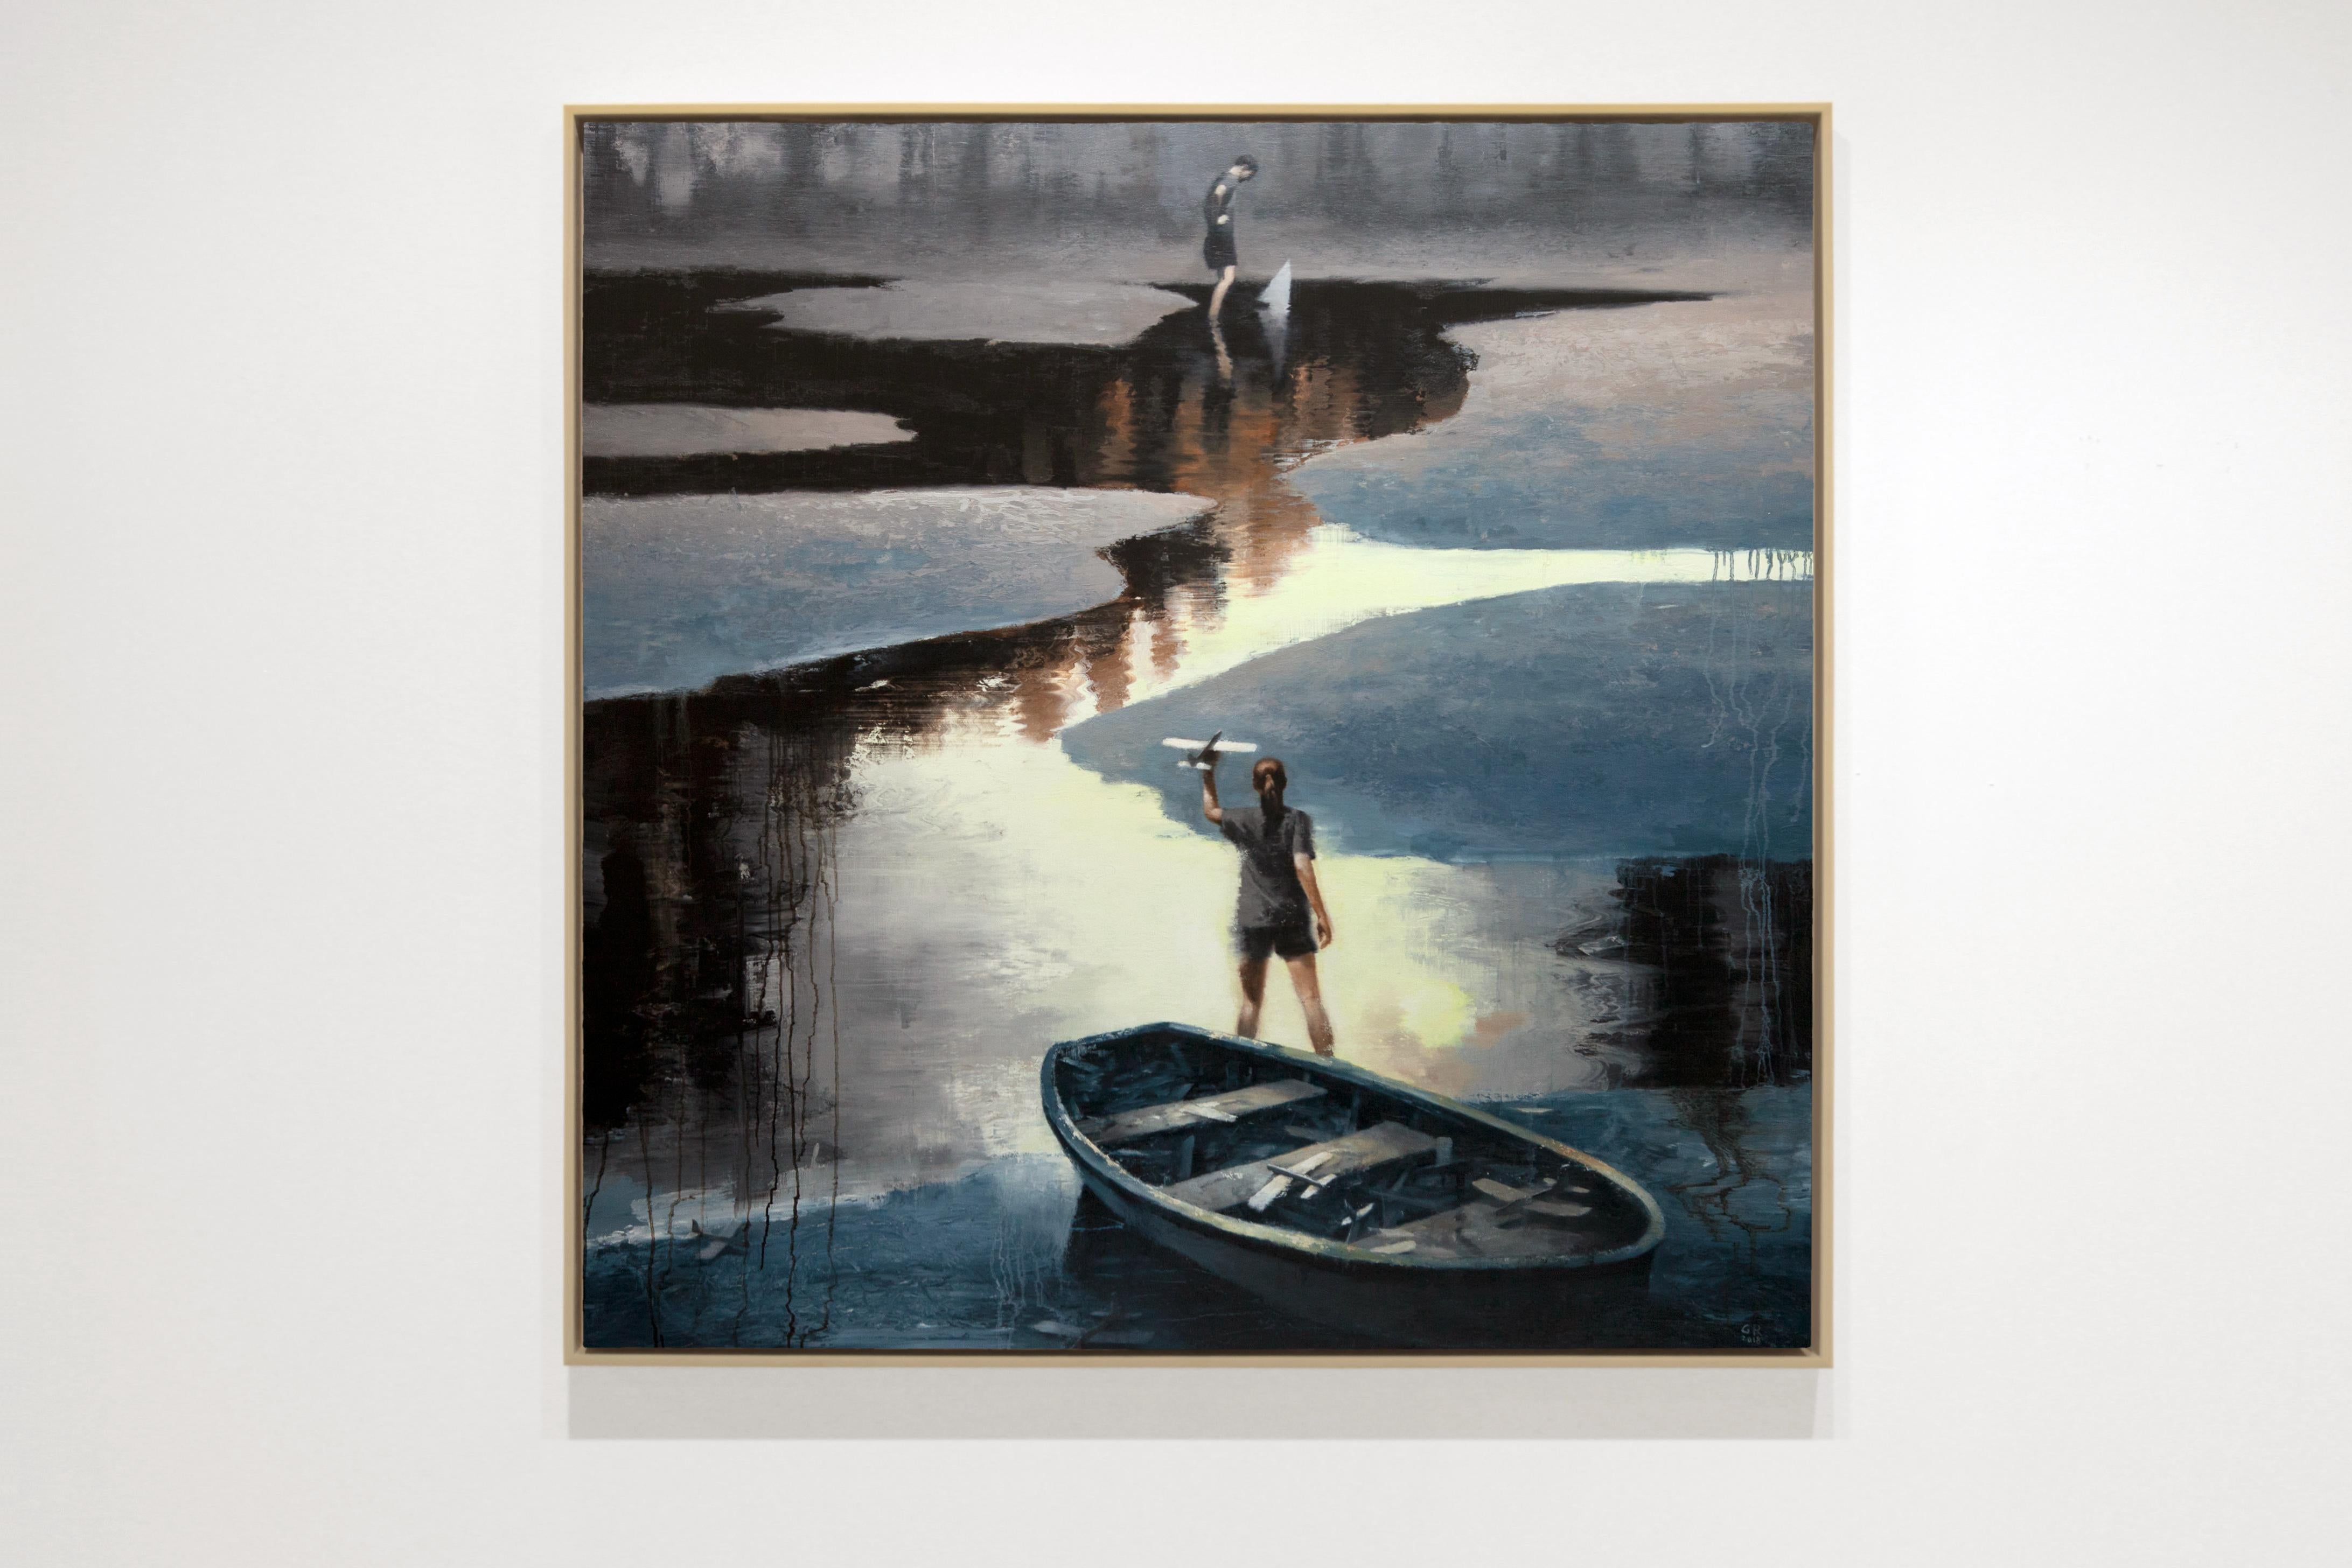 LUNE JAUNE - Peinture figurative / Lac / Nature / Adolescents / Avions / Bateau - Painting de Gary Ruddell